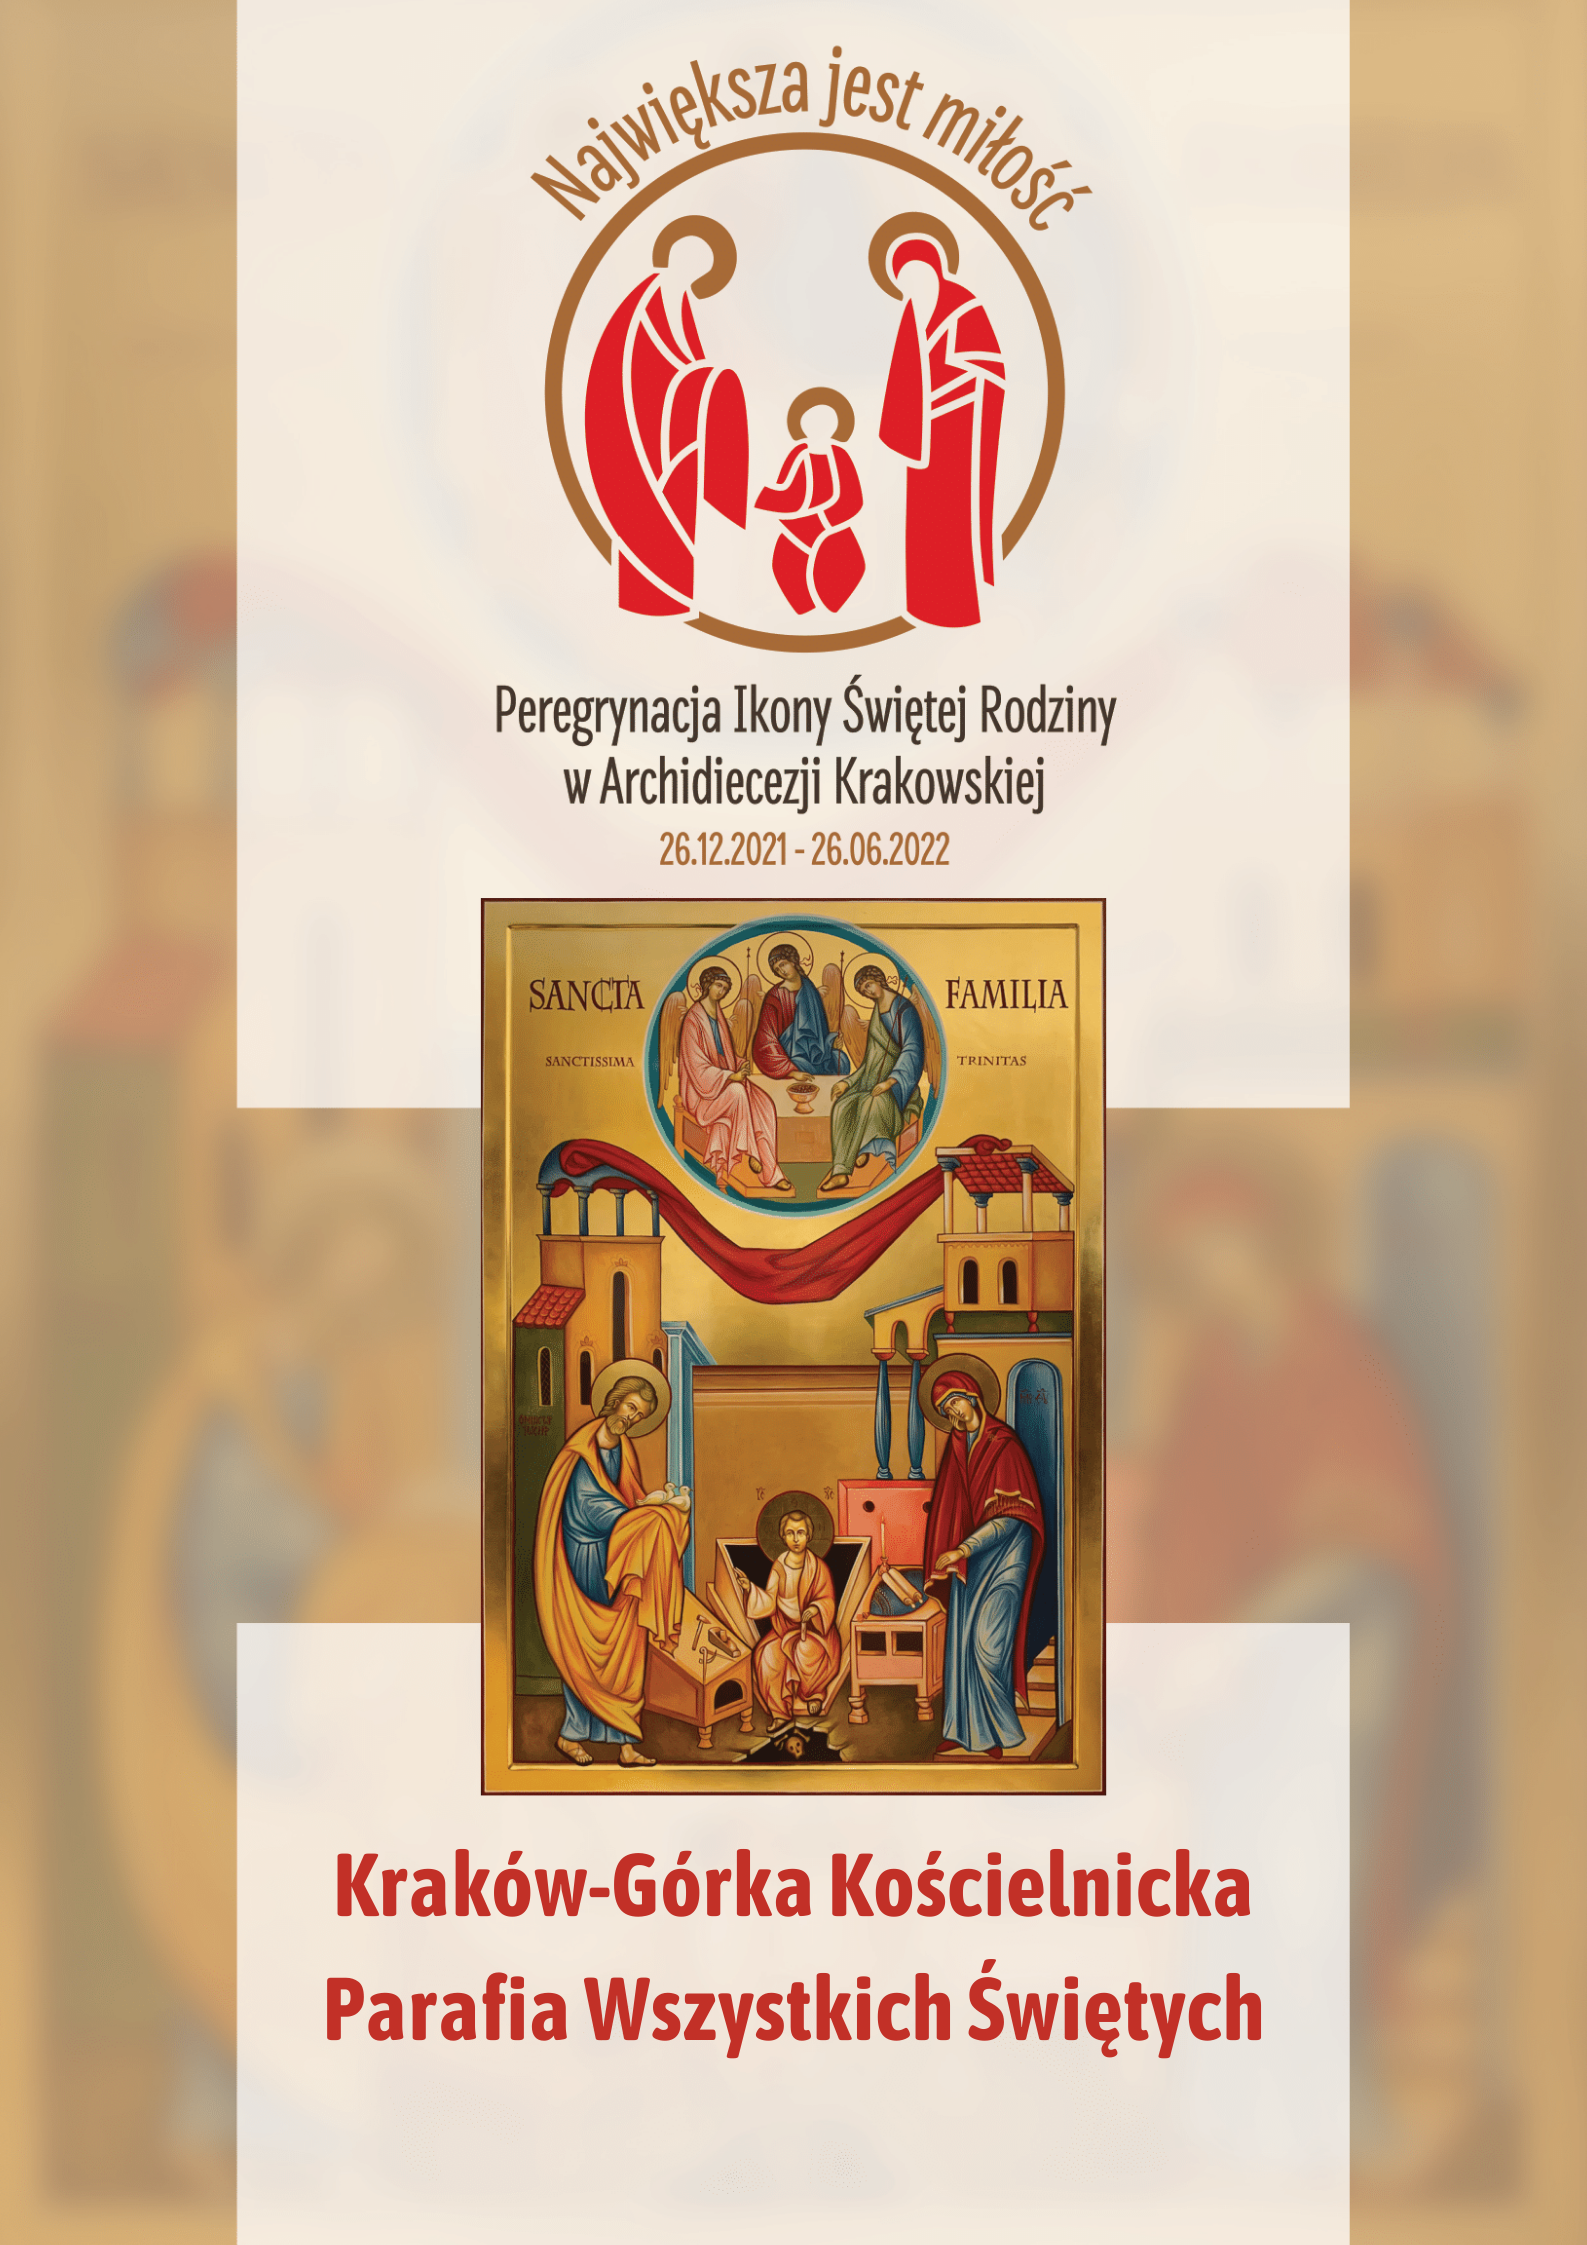 Ikona Świętej Rodziny w parafii Wszystkich Świętych w Krakowie-Górce Kościelnickiej